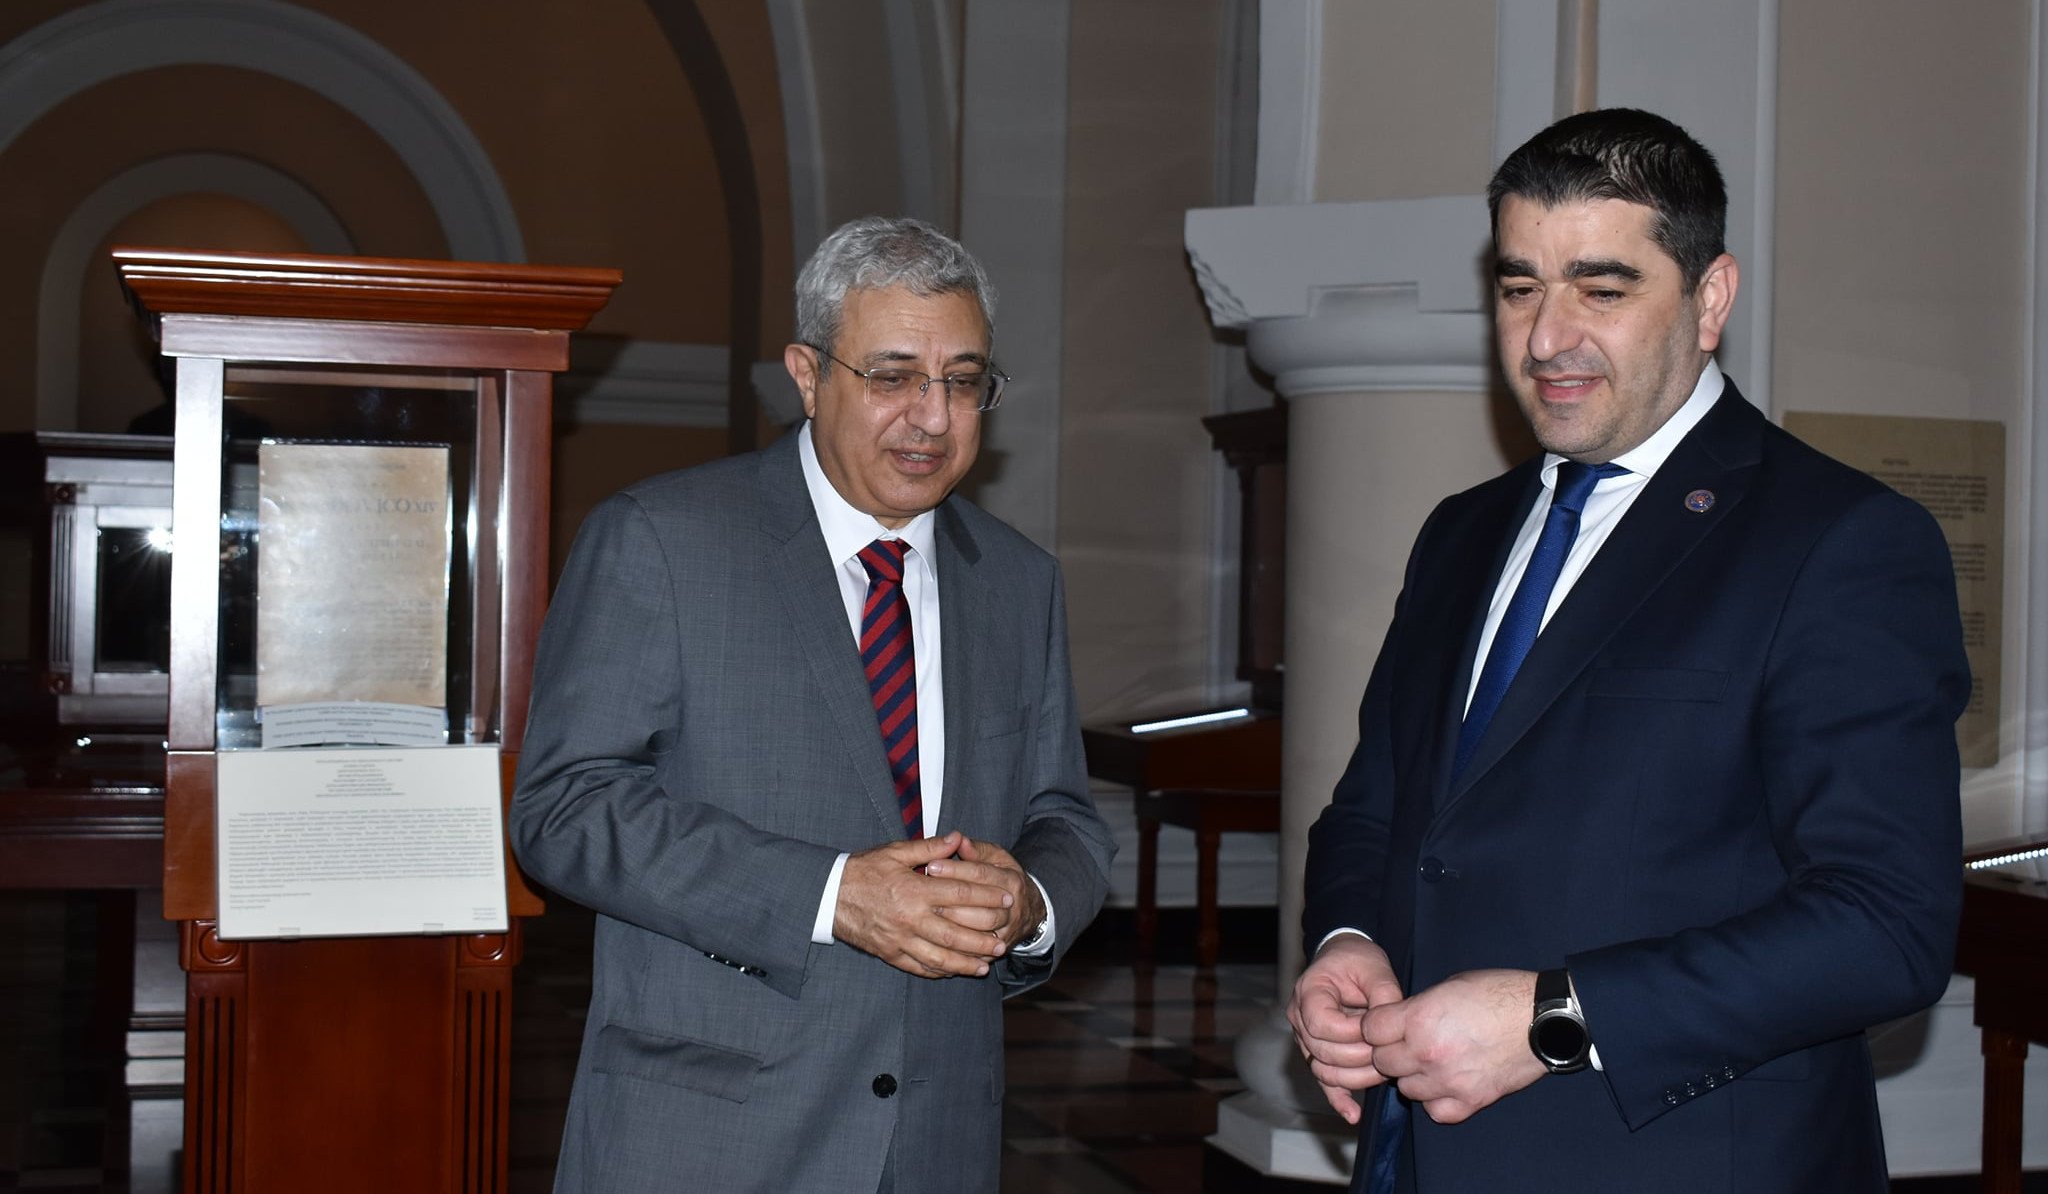 Վրաստանի խորհրդարանի նախագահի գլխավորած պատվիրակությունն այցելել է Մատենադարան